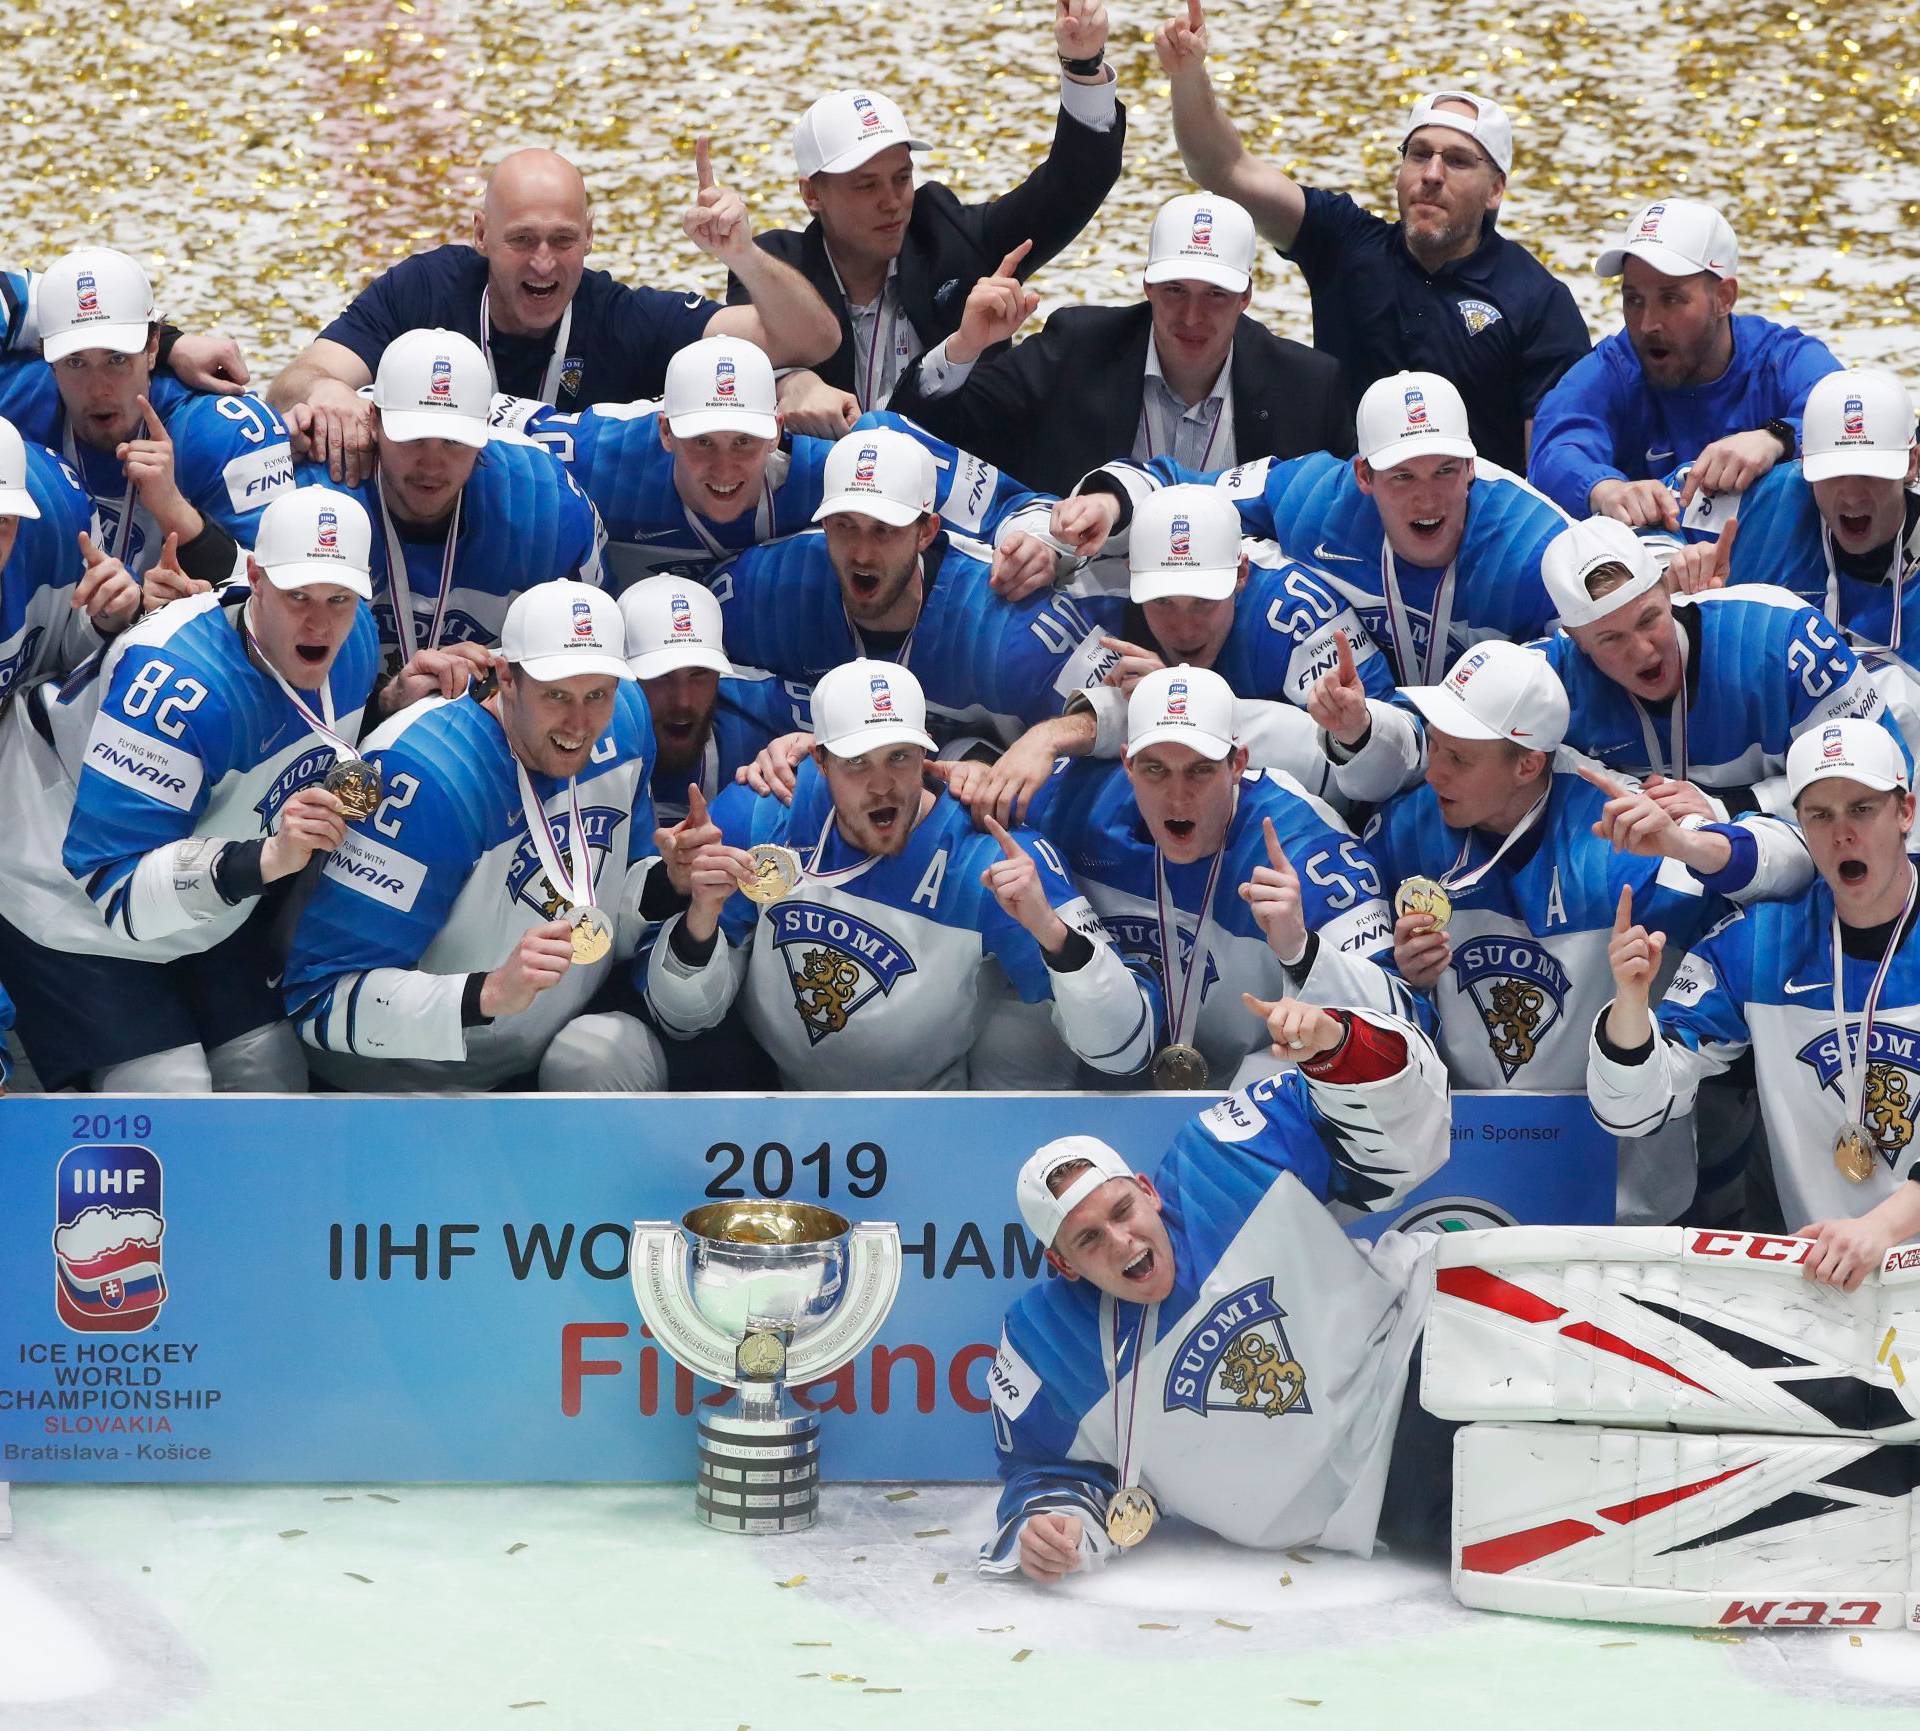 Finska treći put prvak svijeta! U finalu je pala moćna Kanada